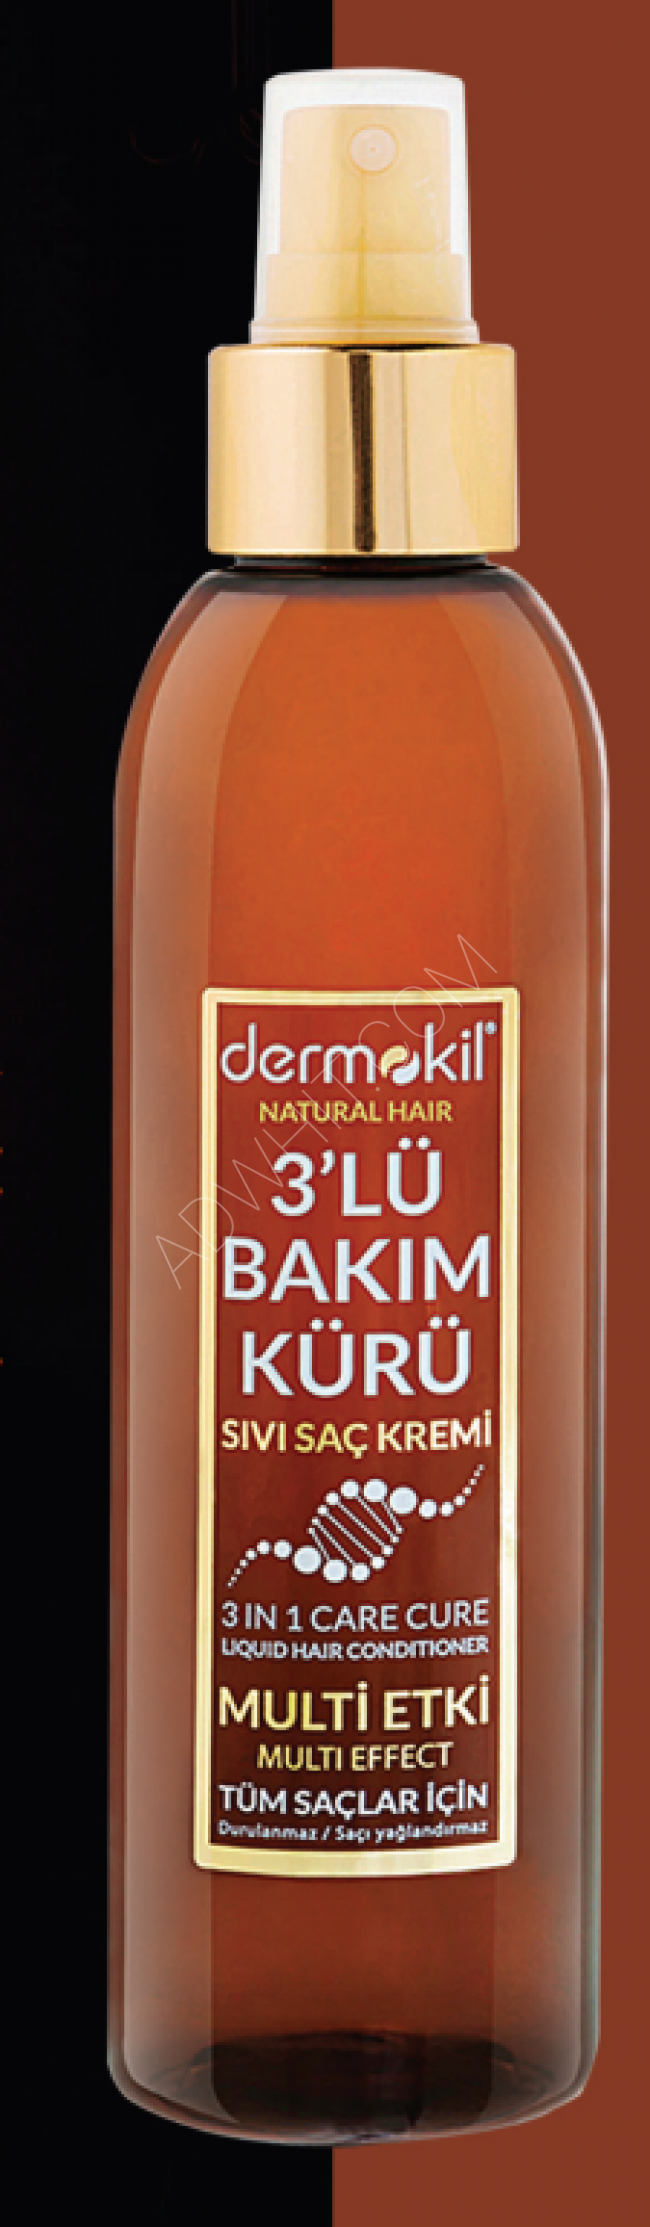 Triple care treatment Dermokil hair cream